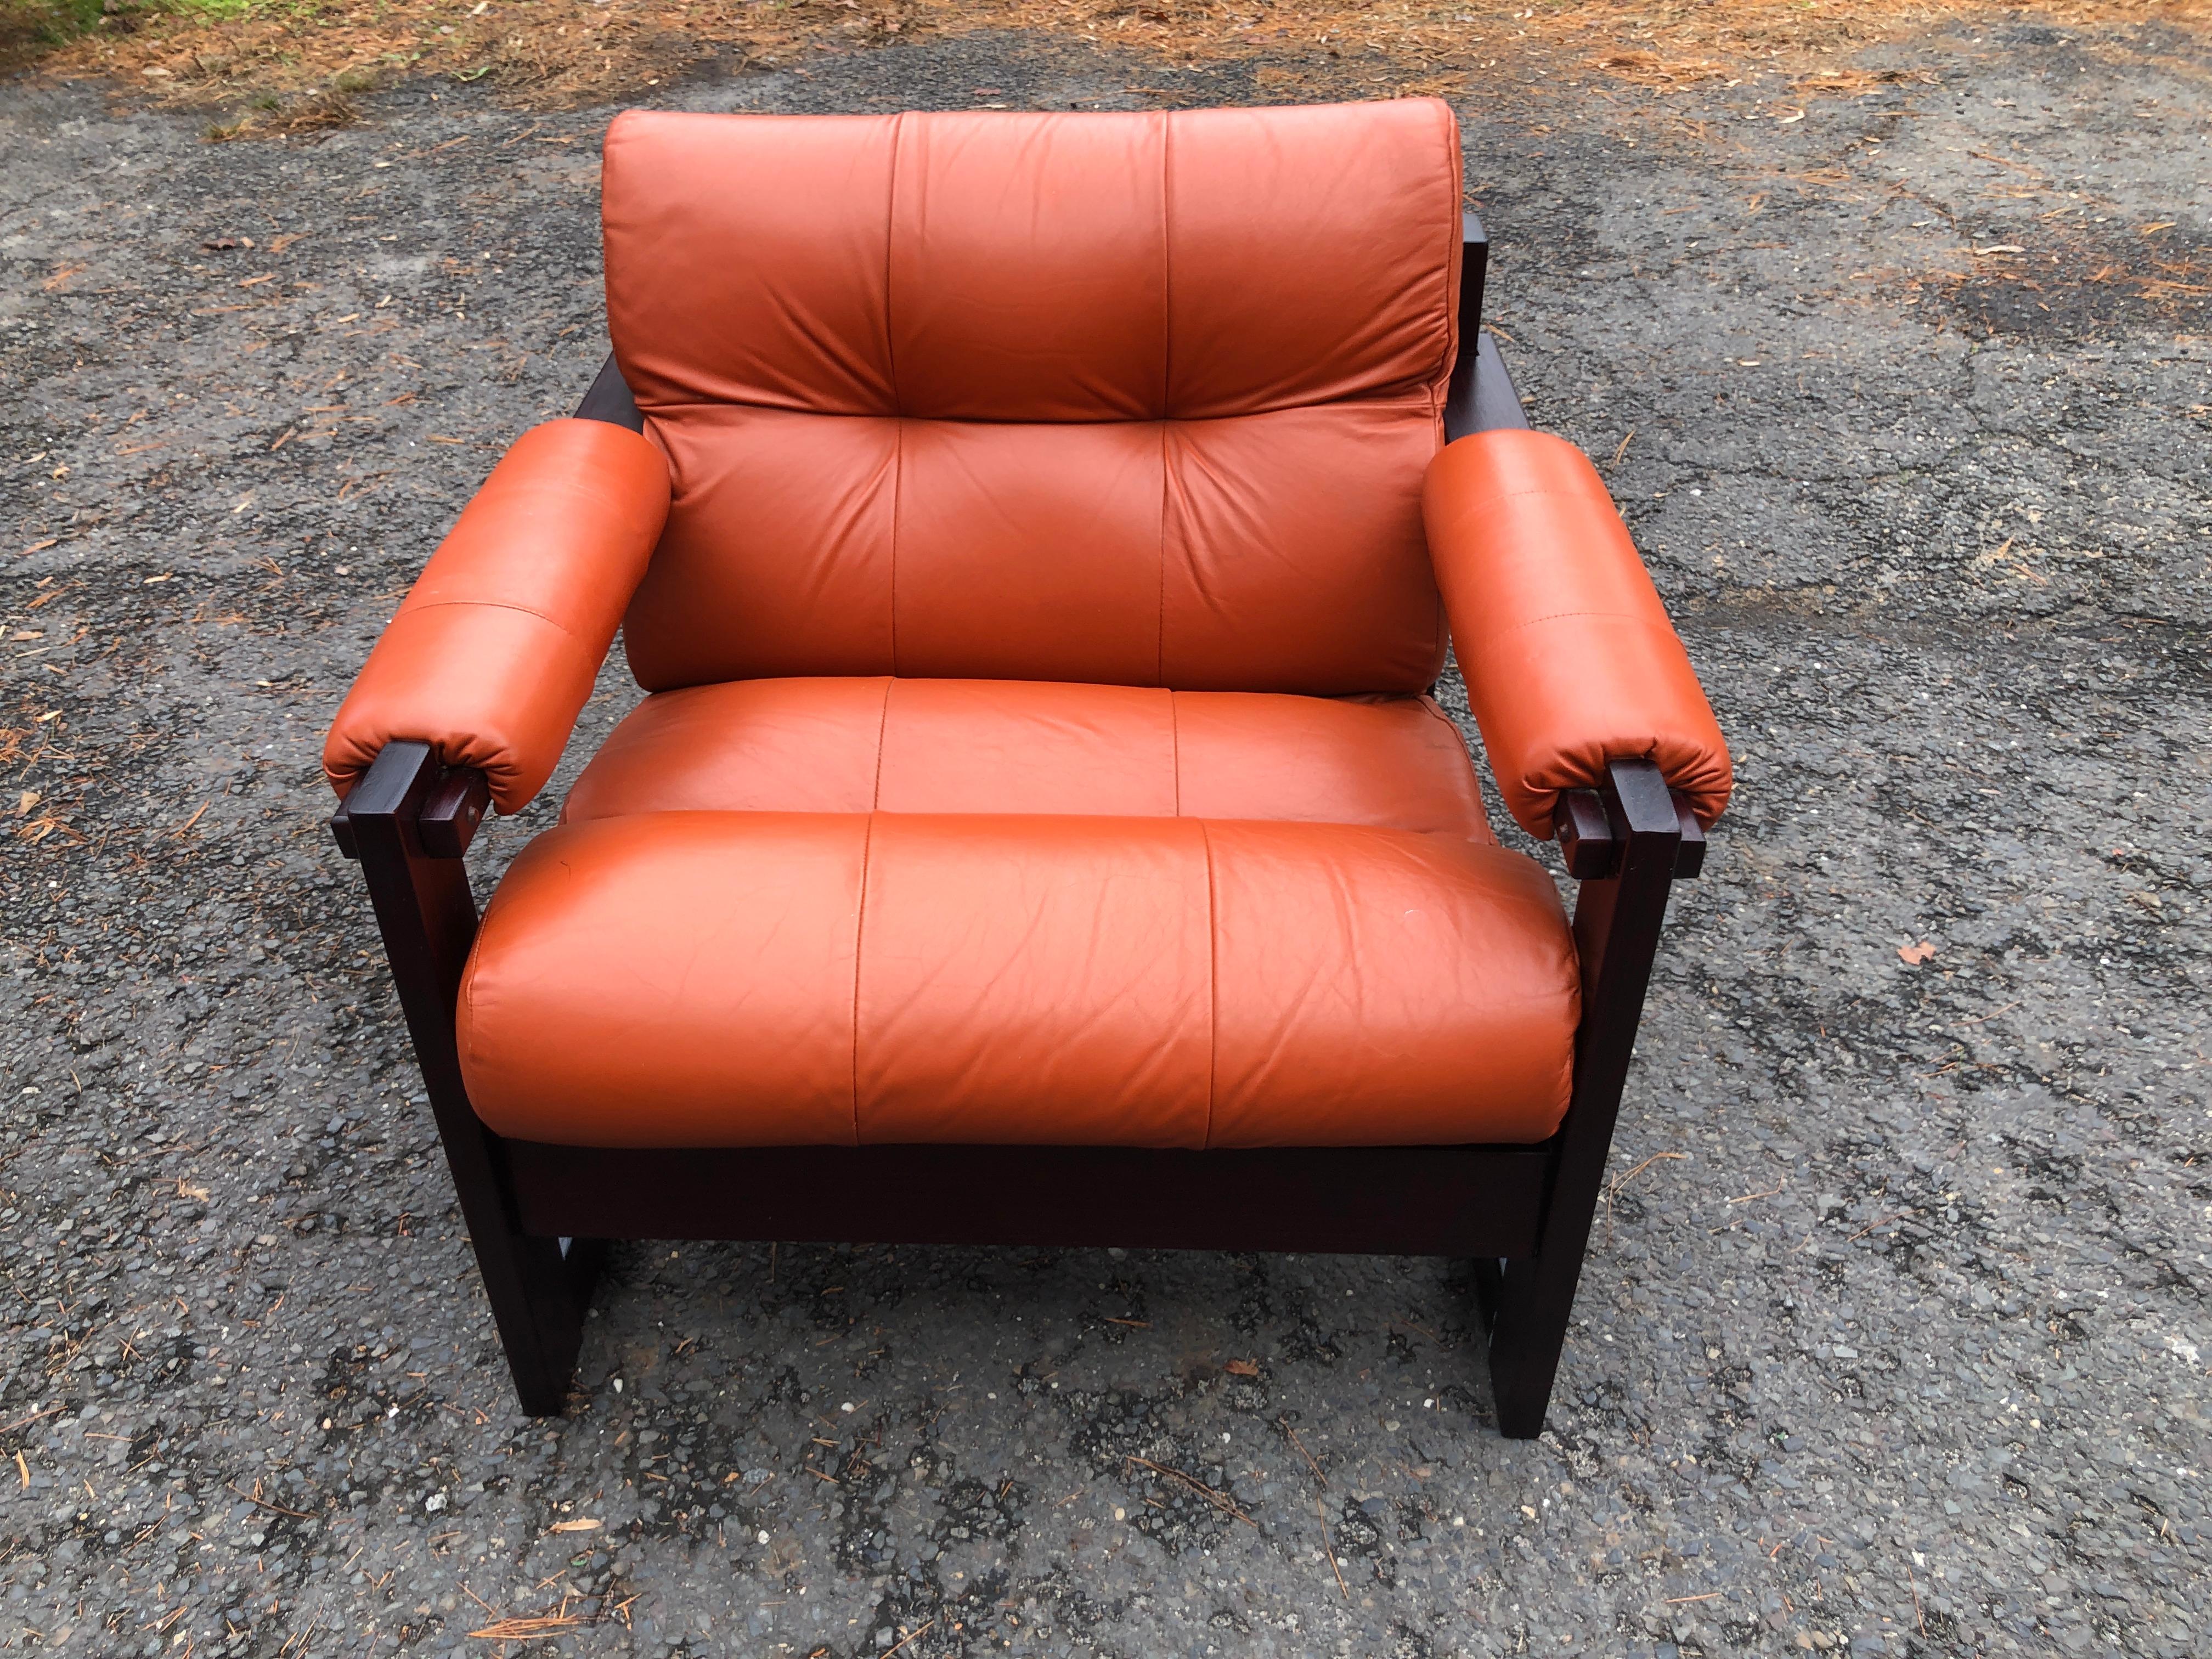 Wunderschöner S-1 Sessel von Percival Lafer aus Rosenholz und Leder.  Lafers S-1 Design zeichnet sich durch brasilianische Exotik gepaart mit skandinavischer Sensibilität aus.  Von Lafers Entwürfen ist die S-1 etwas seltener zu finden als einige